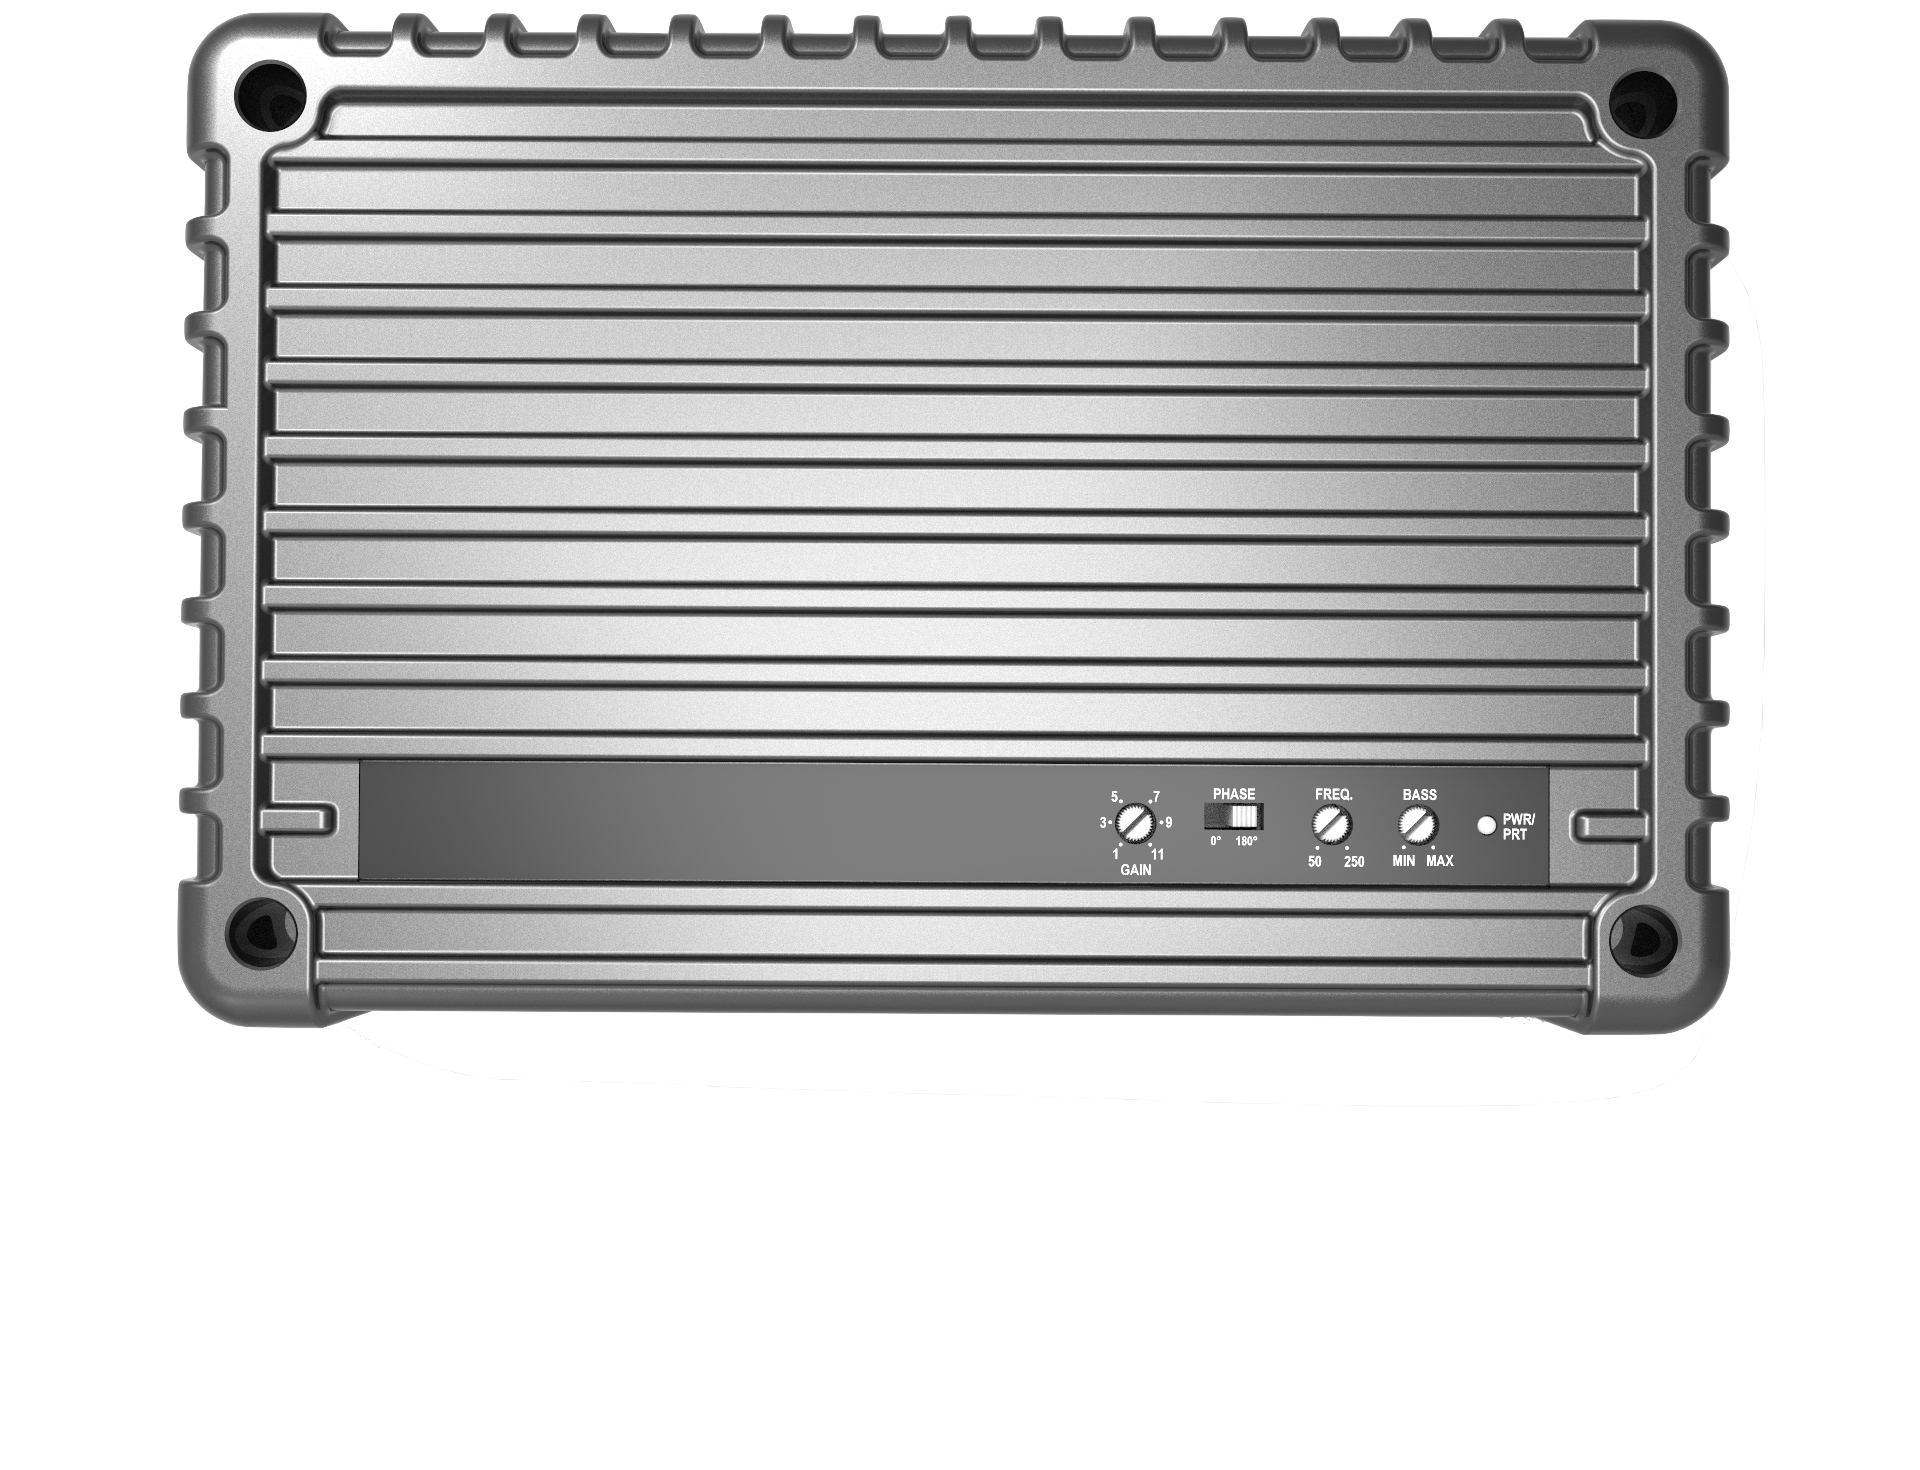 500 watt Araba Amplifikatörü-araba hifi amplifikatörü